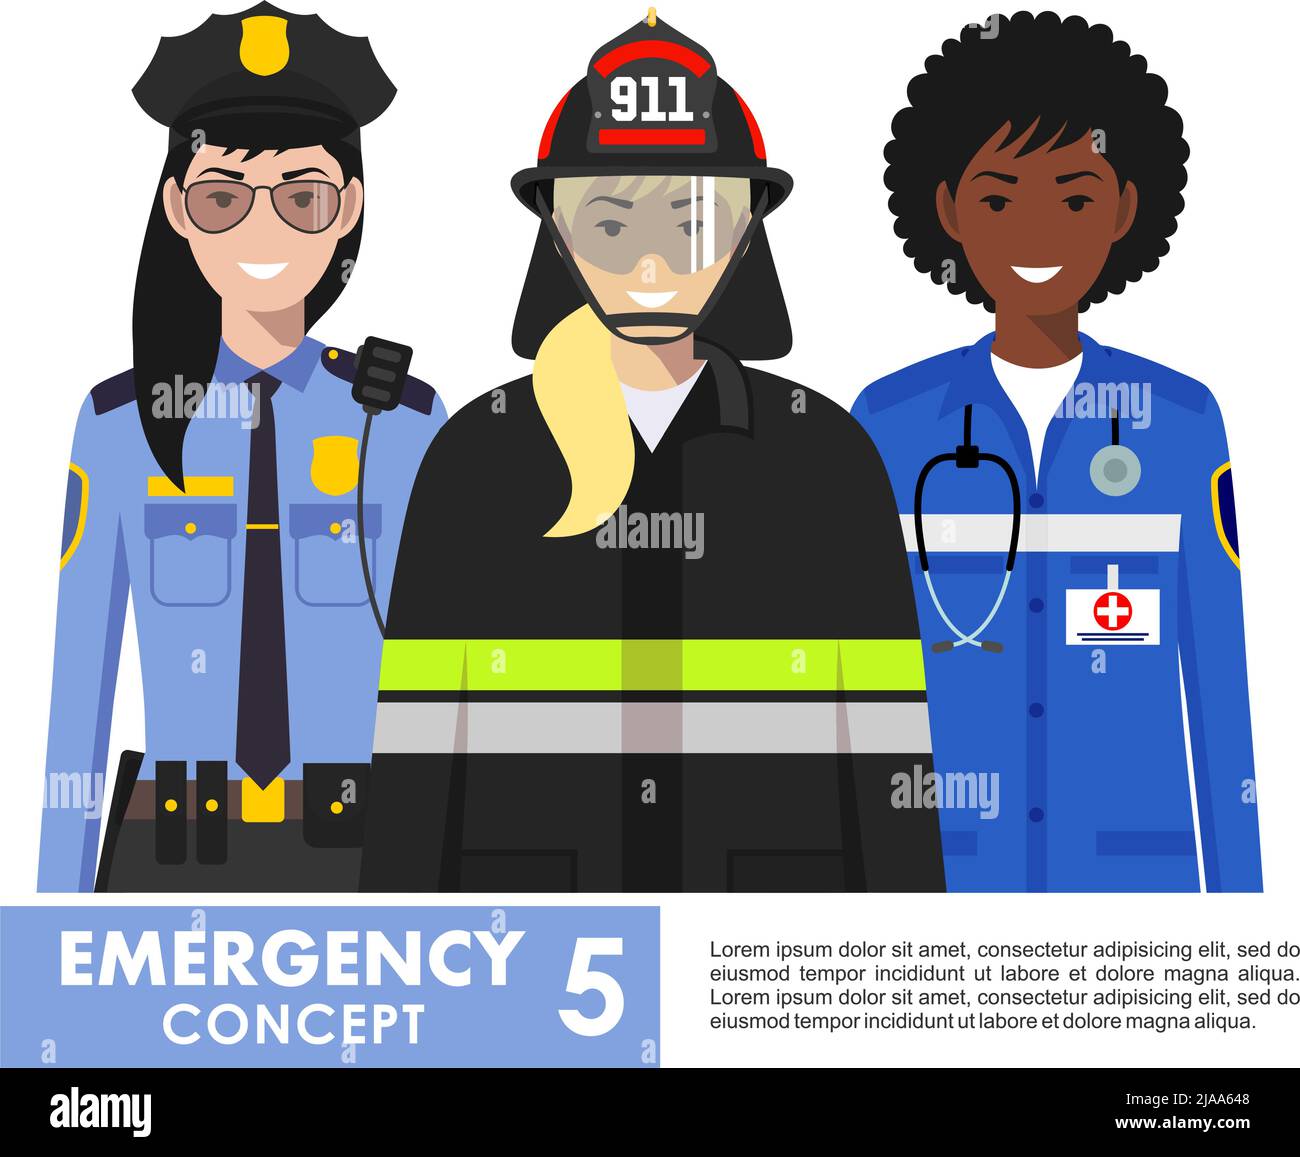 Illustration détaillée d'un pompier féminin, d'un médecin urgentiste, d'un policier de style plat sur fond blanc. Illustration de Vecteur